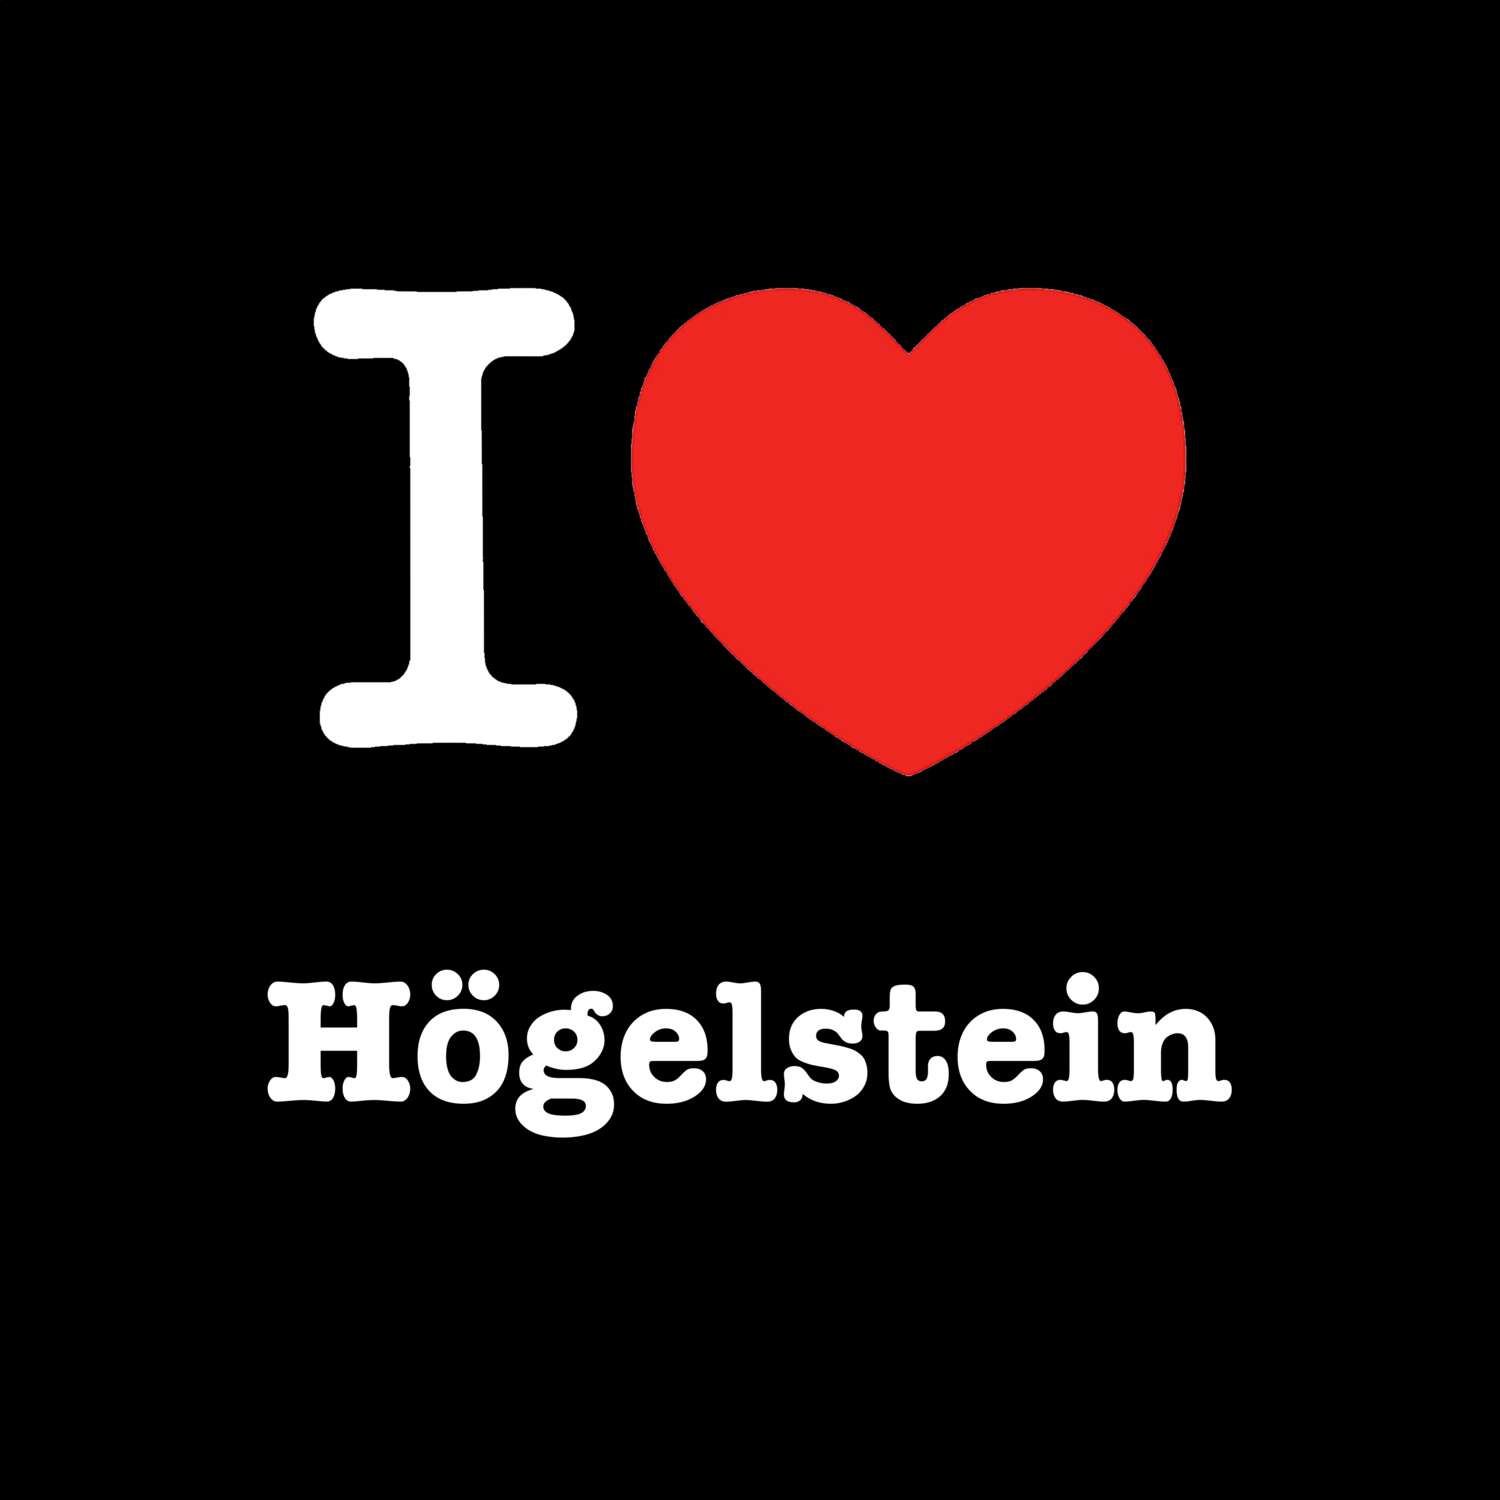 Högelstein T-Shirt »I love«